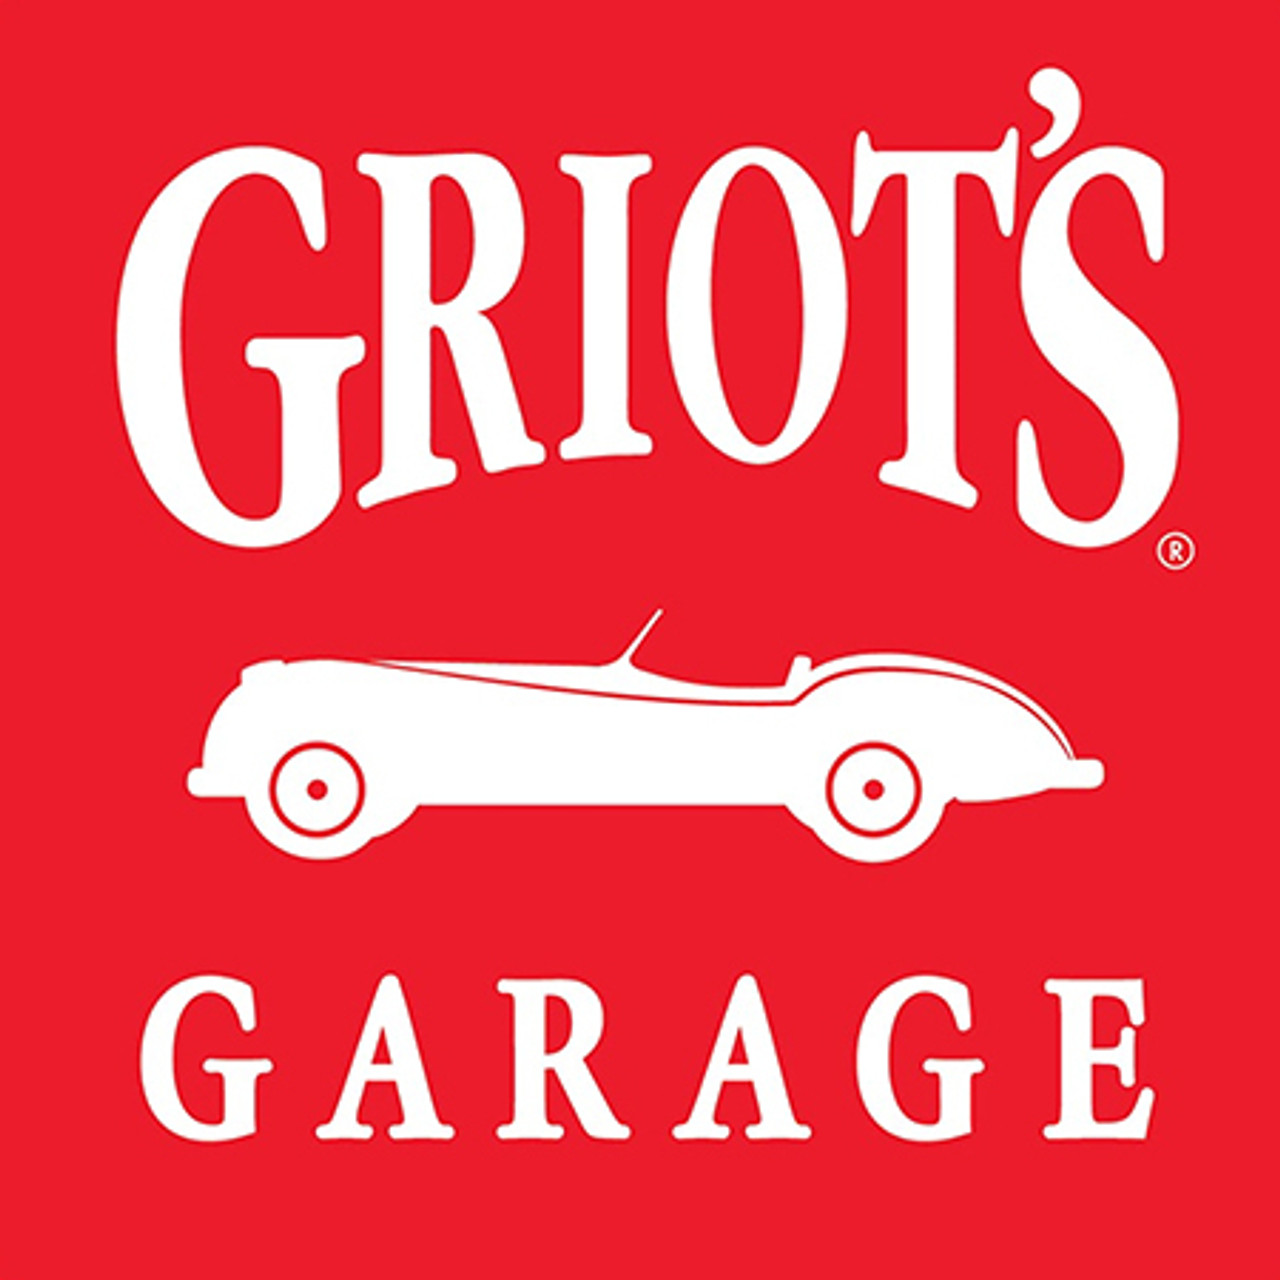 Griot’s Garage